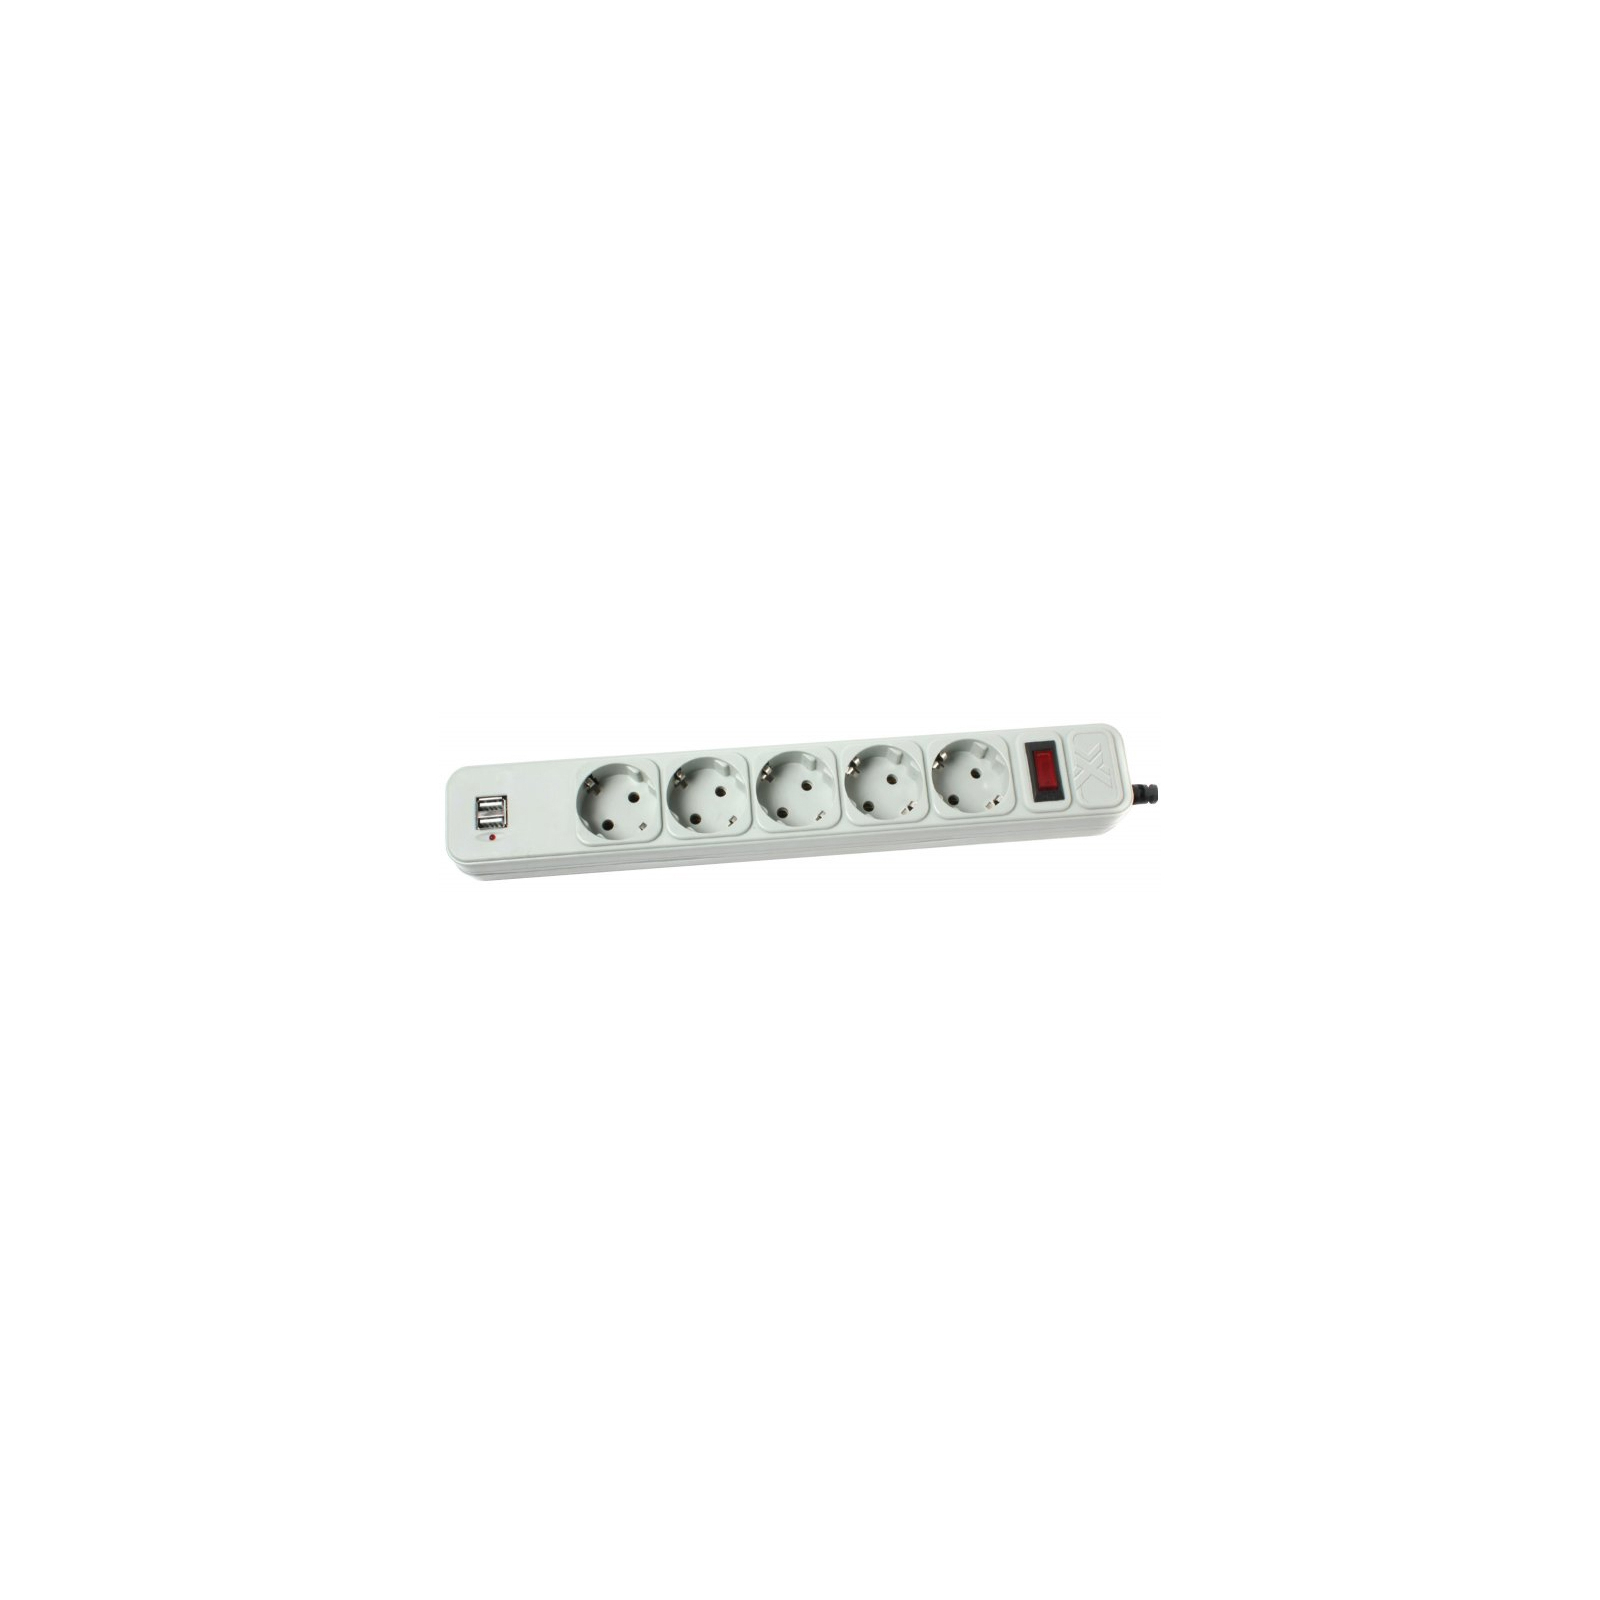 Мережевий фільтр живлення Maxxtro PWE-05K-3, серый, 3 м кабель, 5 розеток, USB зарядка 2А (PWE-05K-3)